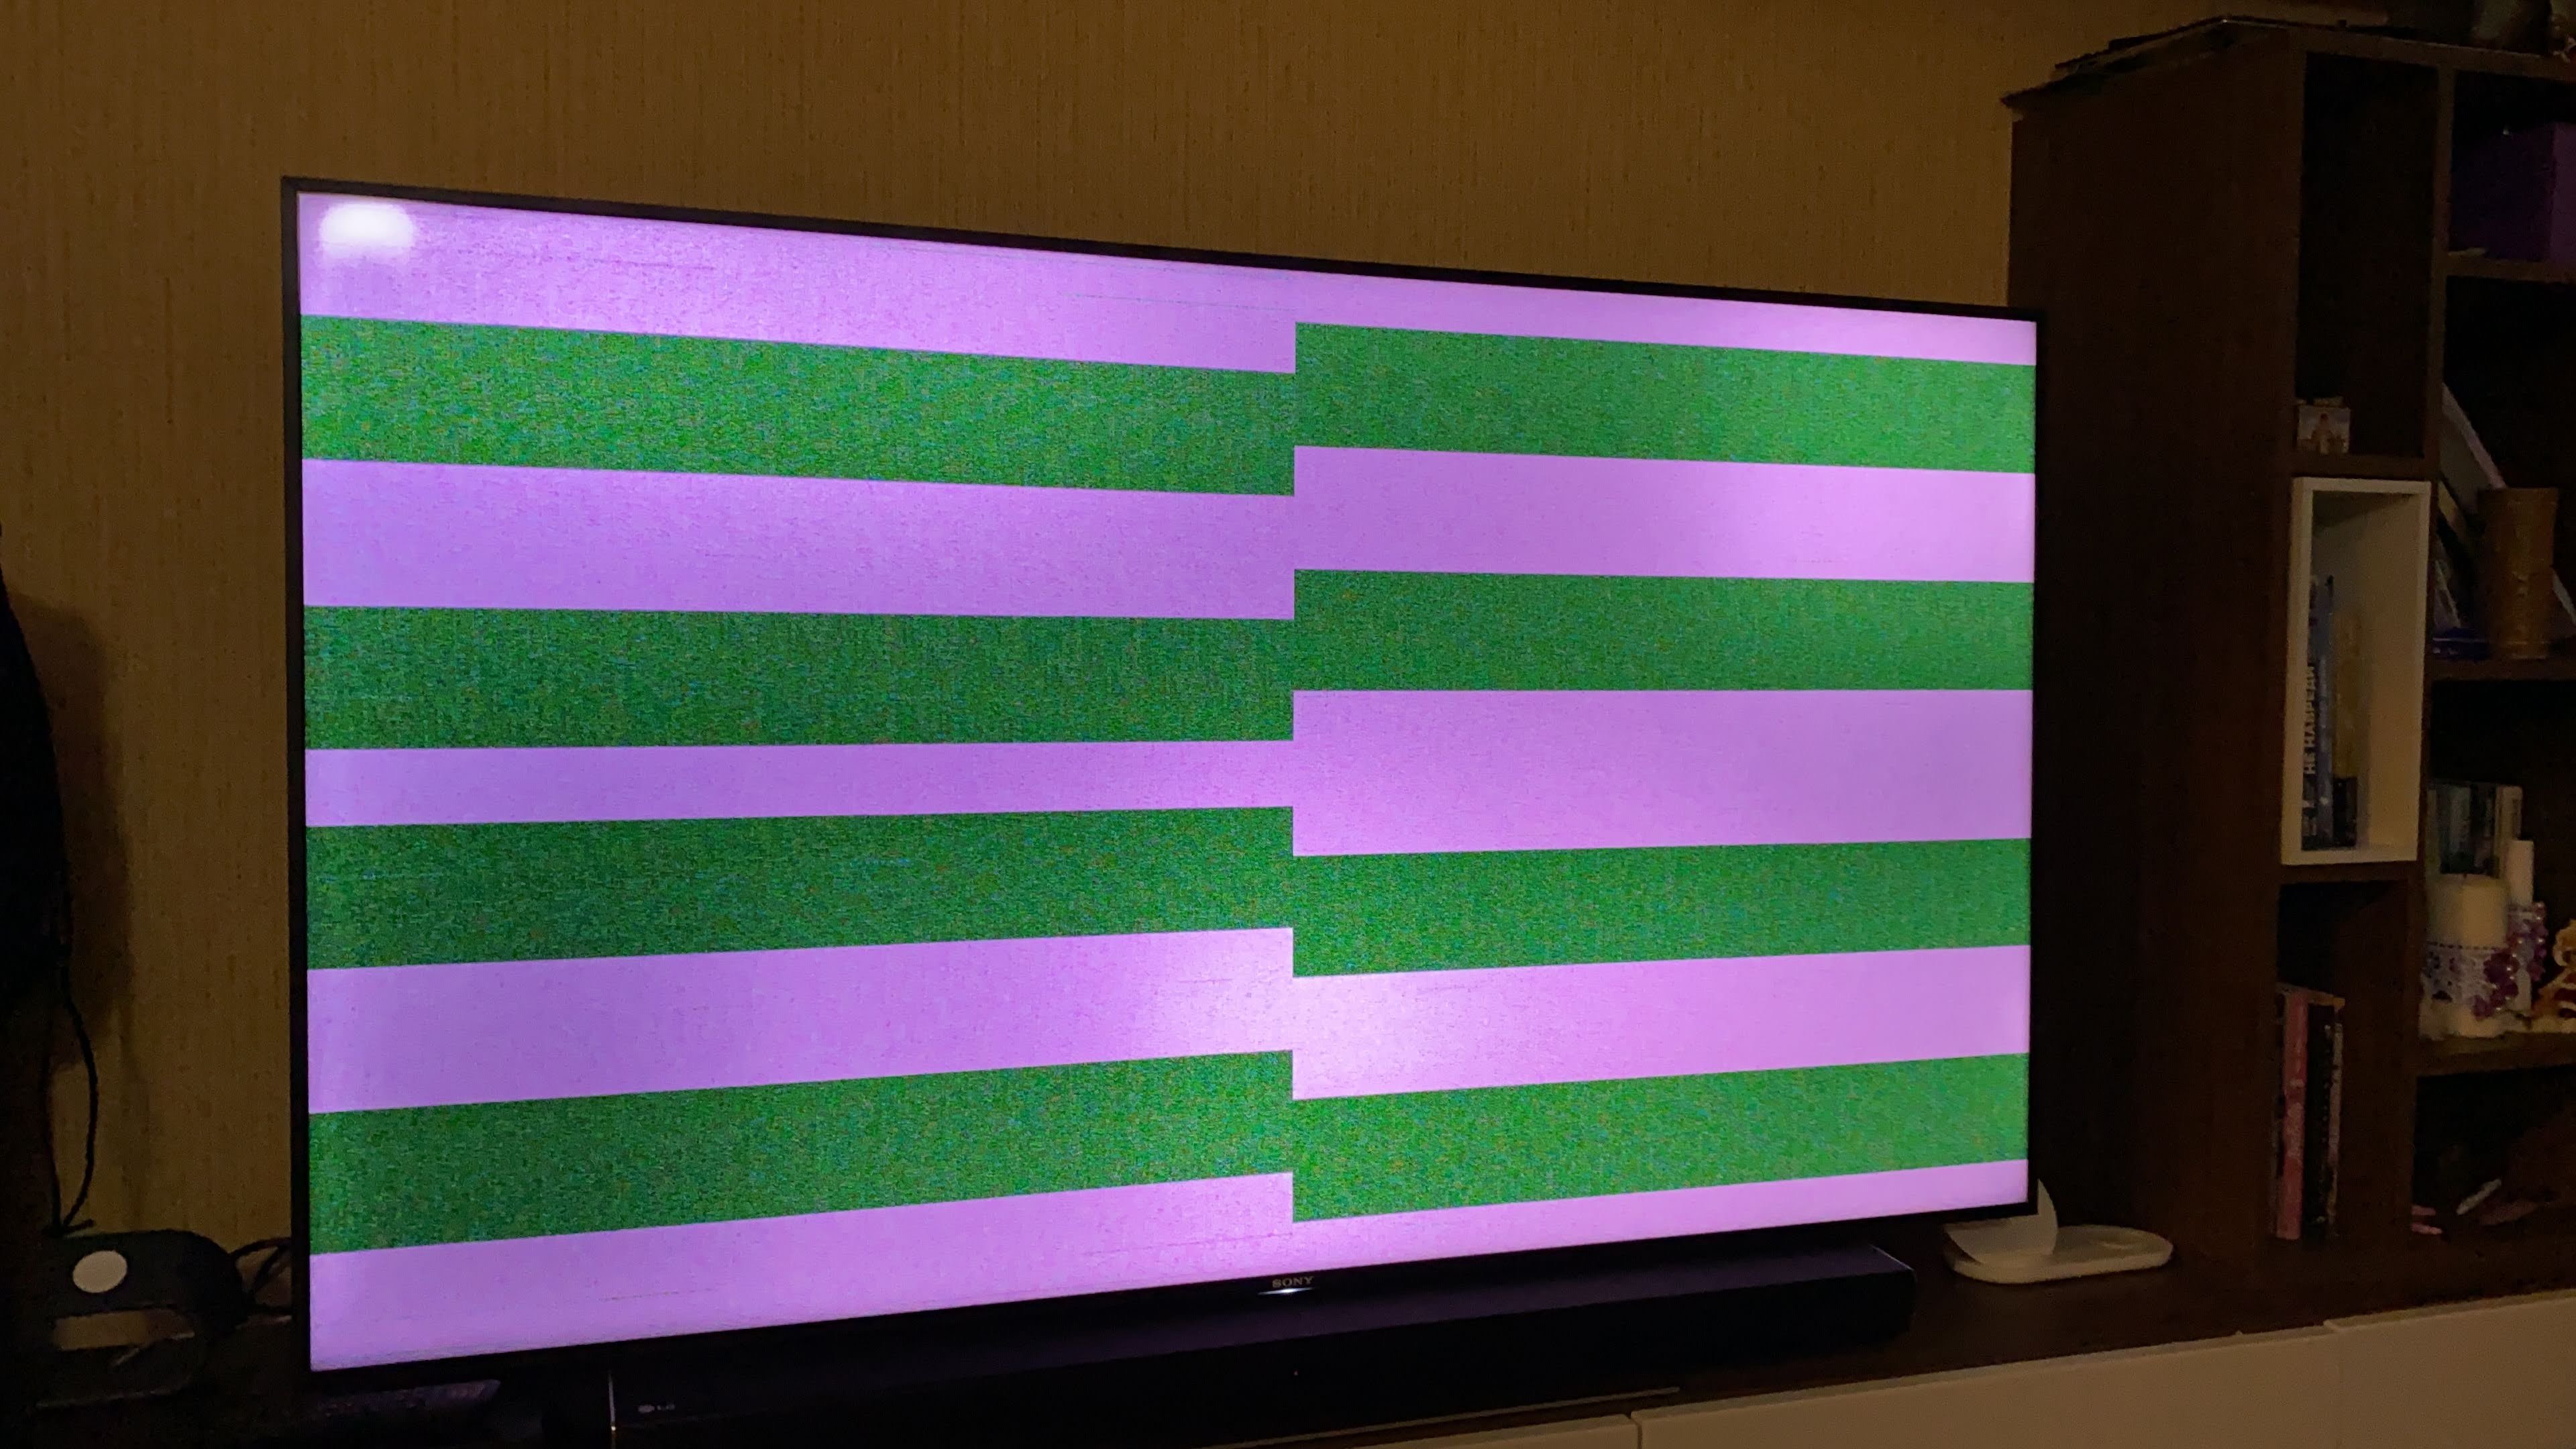 Жк телевизор полосы на экране. KD-65x9005a полосы на экране. Горизонтальные полоски на экране. Горизонтальные полосы на телевизоре. Полоски на телевизоре.